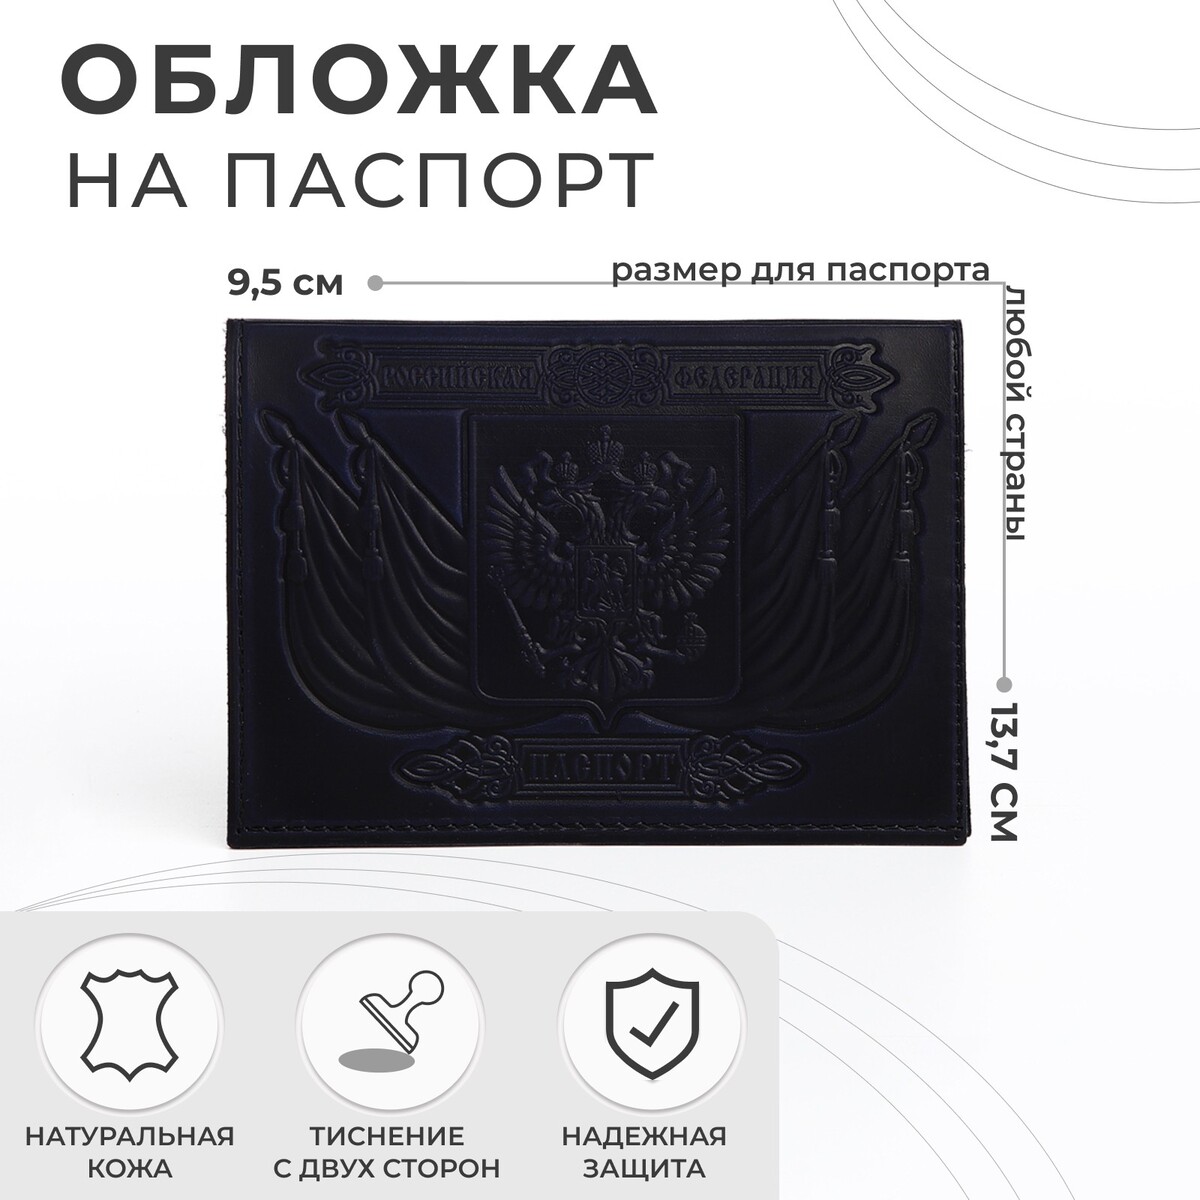 Обложка для паспорта, тиснение, герб, цвет темно-синий обложка для паспорта тиснение герб темно синий